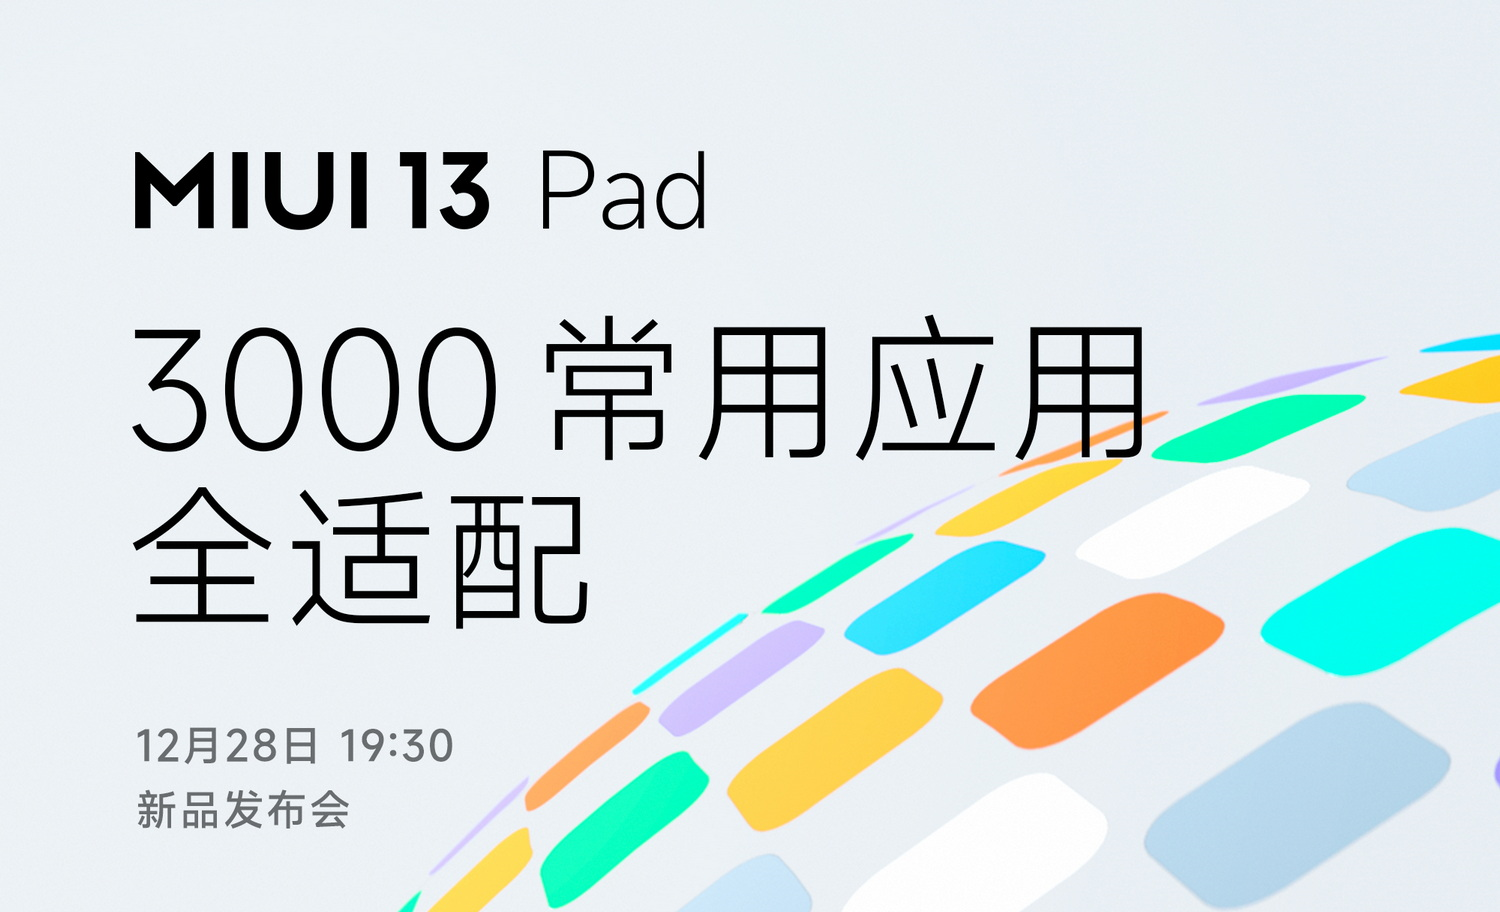 Xiaomi wird eine spezielle Version von MIUI 13 für Tablets präsentieren